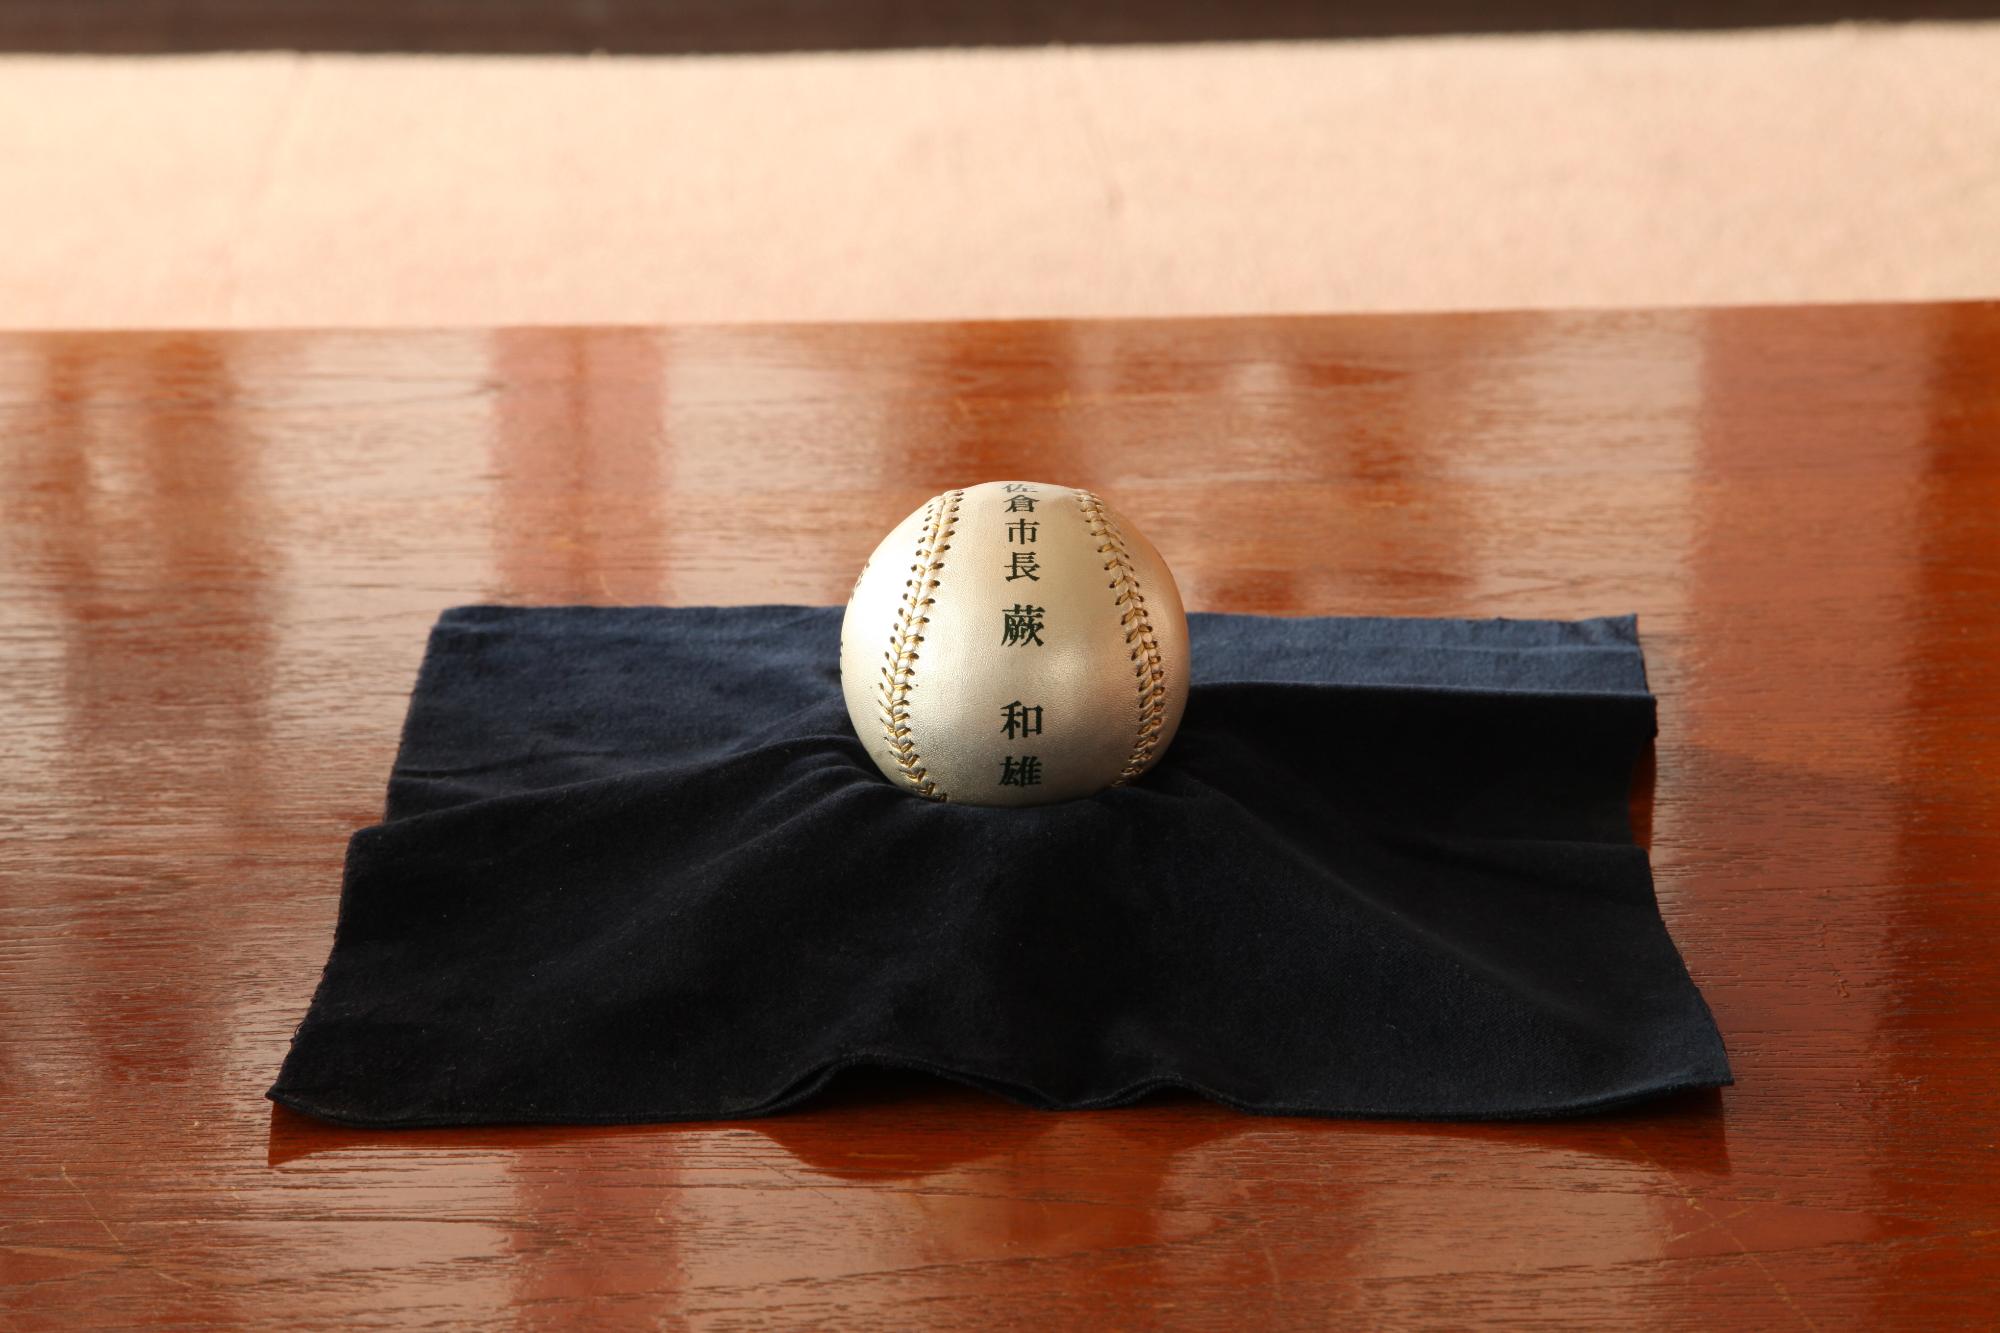 佐倉市市長 蕨 和雄と書かれた銀色のボールが、黒い布の上に置かれている写真